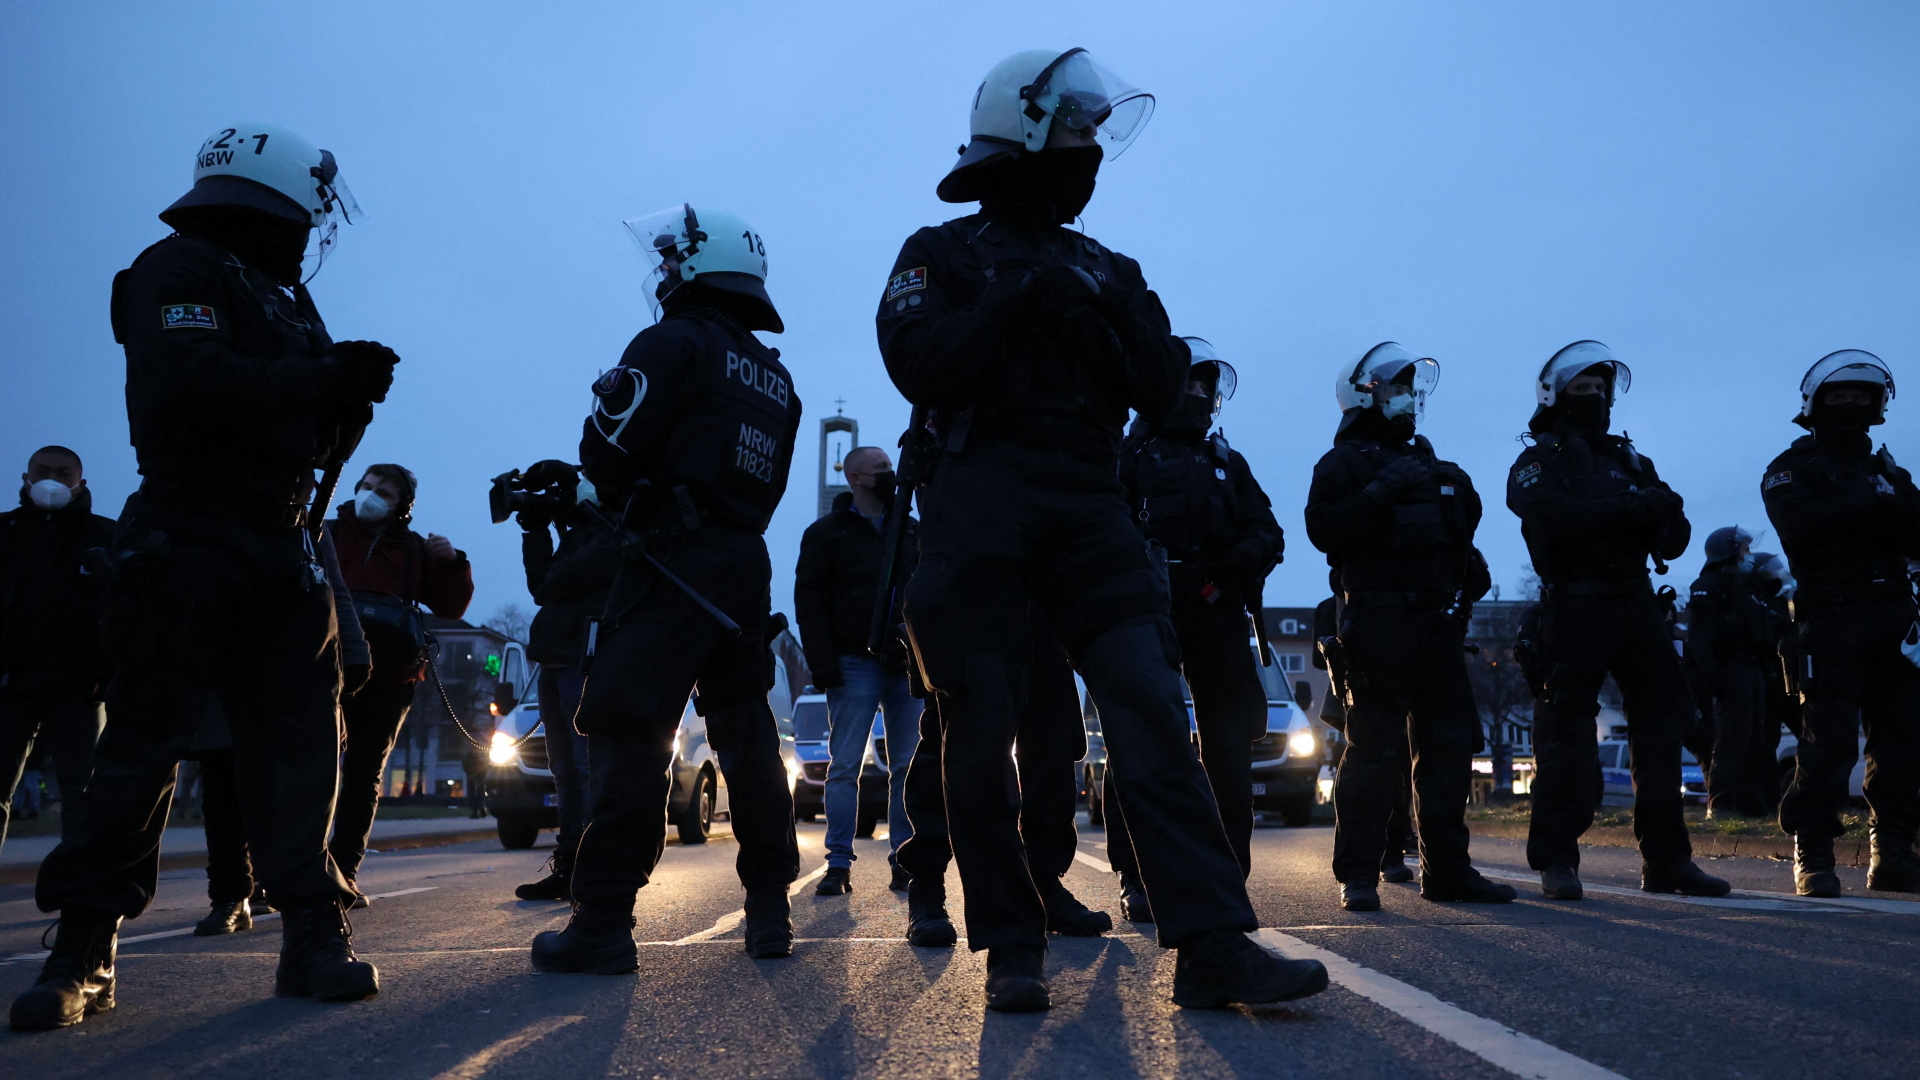 Polizisten in Kassel bei der Groß-Demo gegen die Corona-Maßnahmen am Samstag | AFP